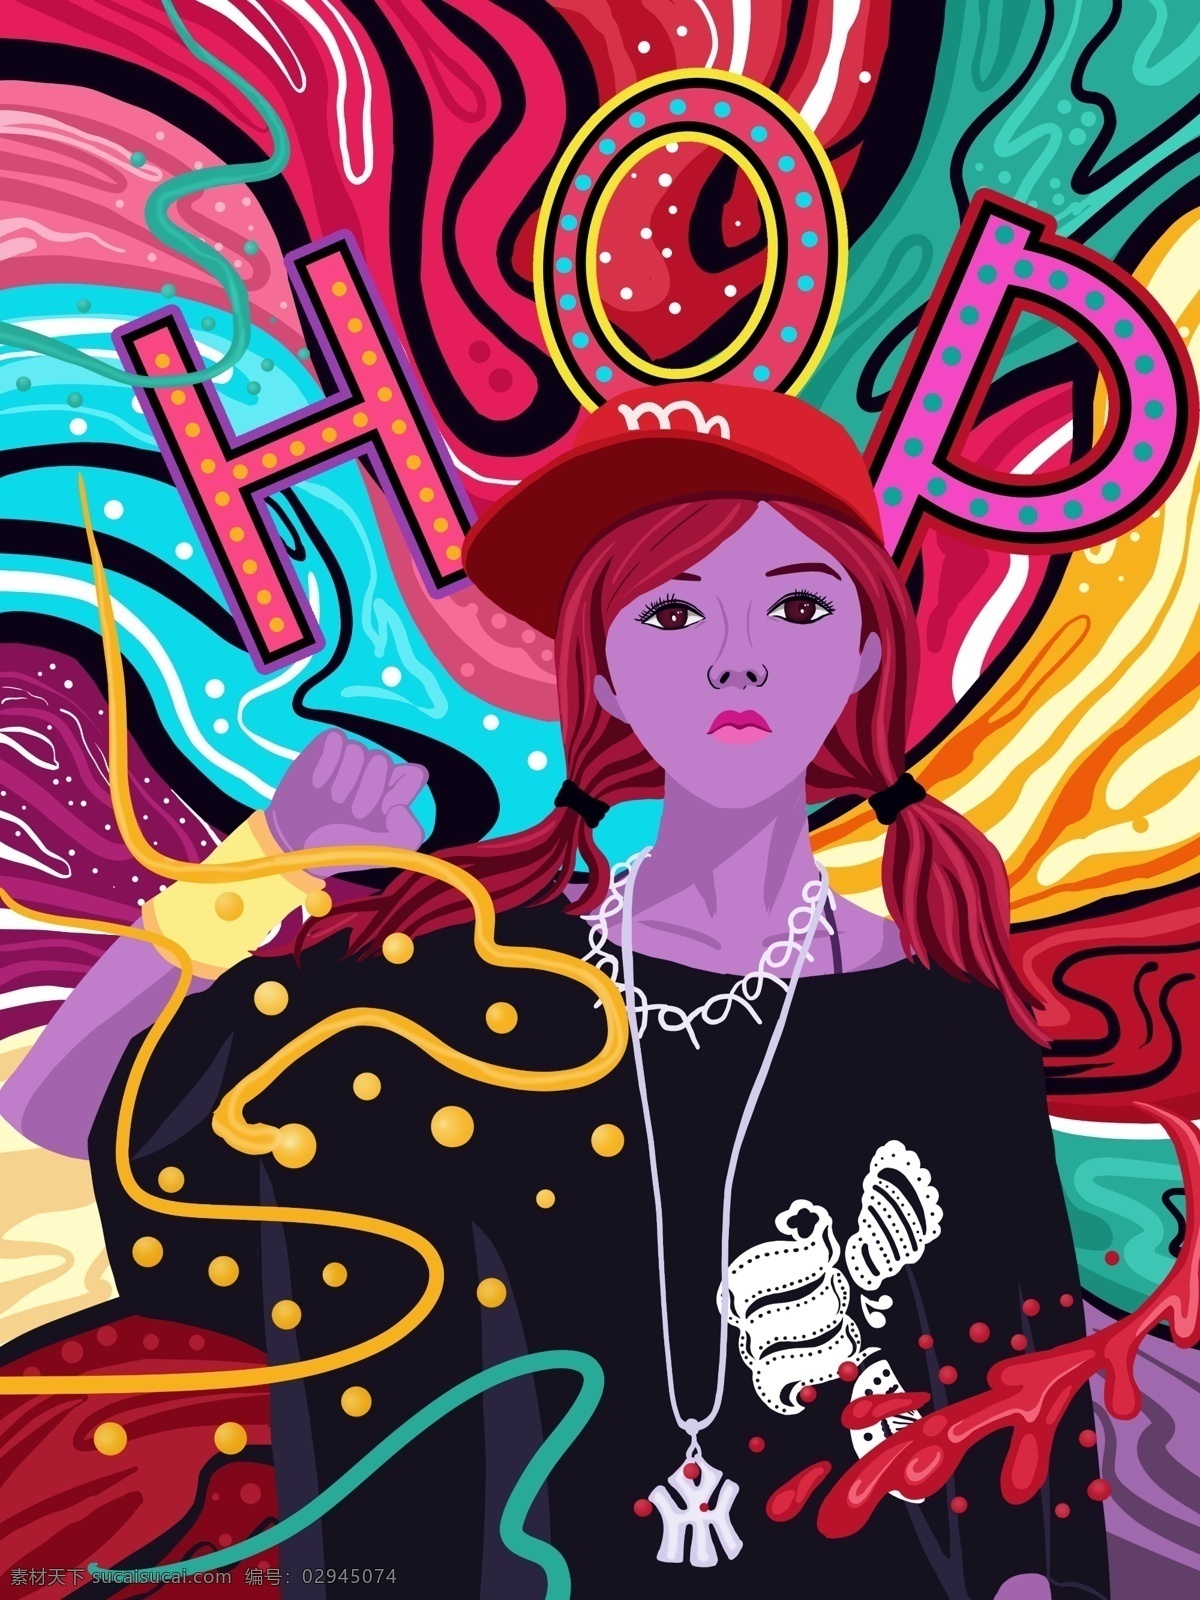 流动 糖果 色 嘻哈 女孩 系列 插画 糖果色 绚丽多彩 流动的色彩 微信用图 嘻哈女孩 糖果色插画